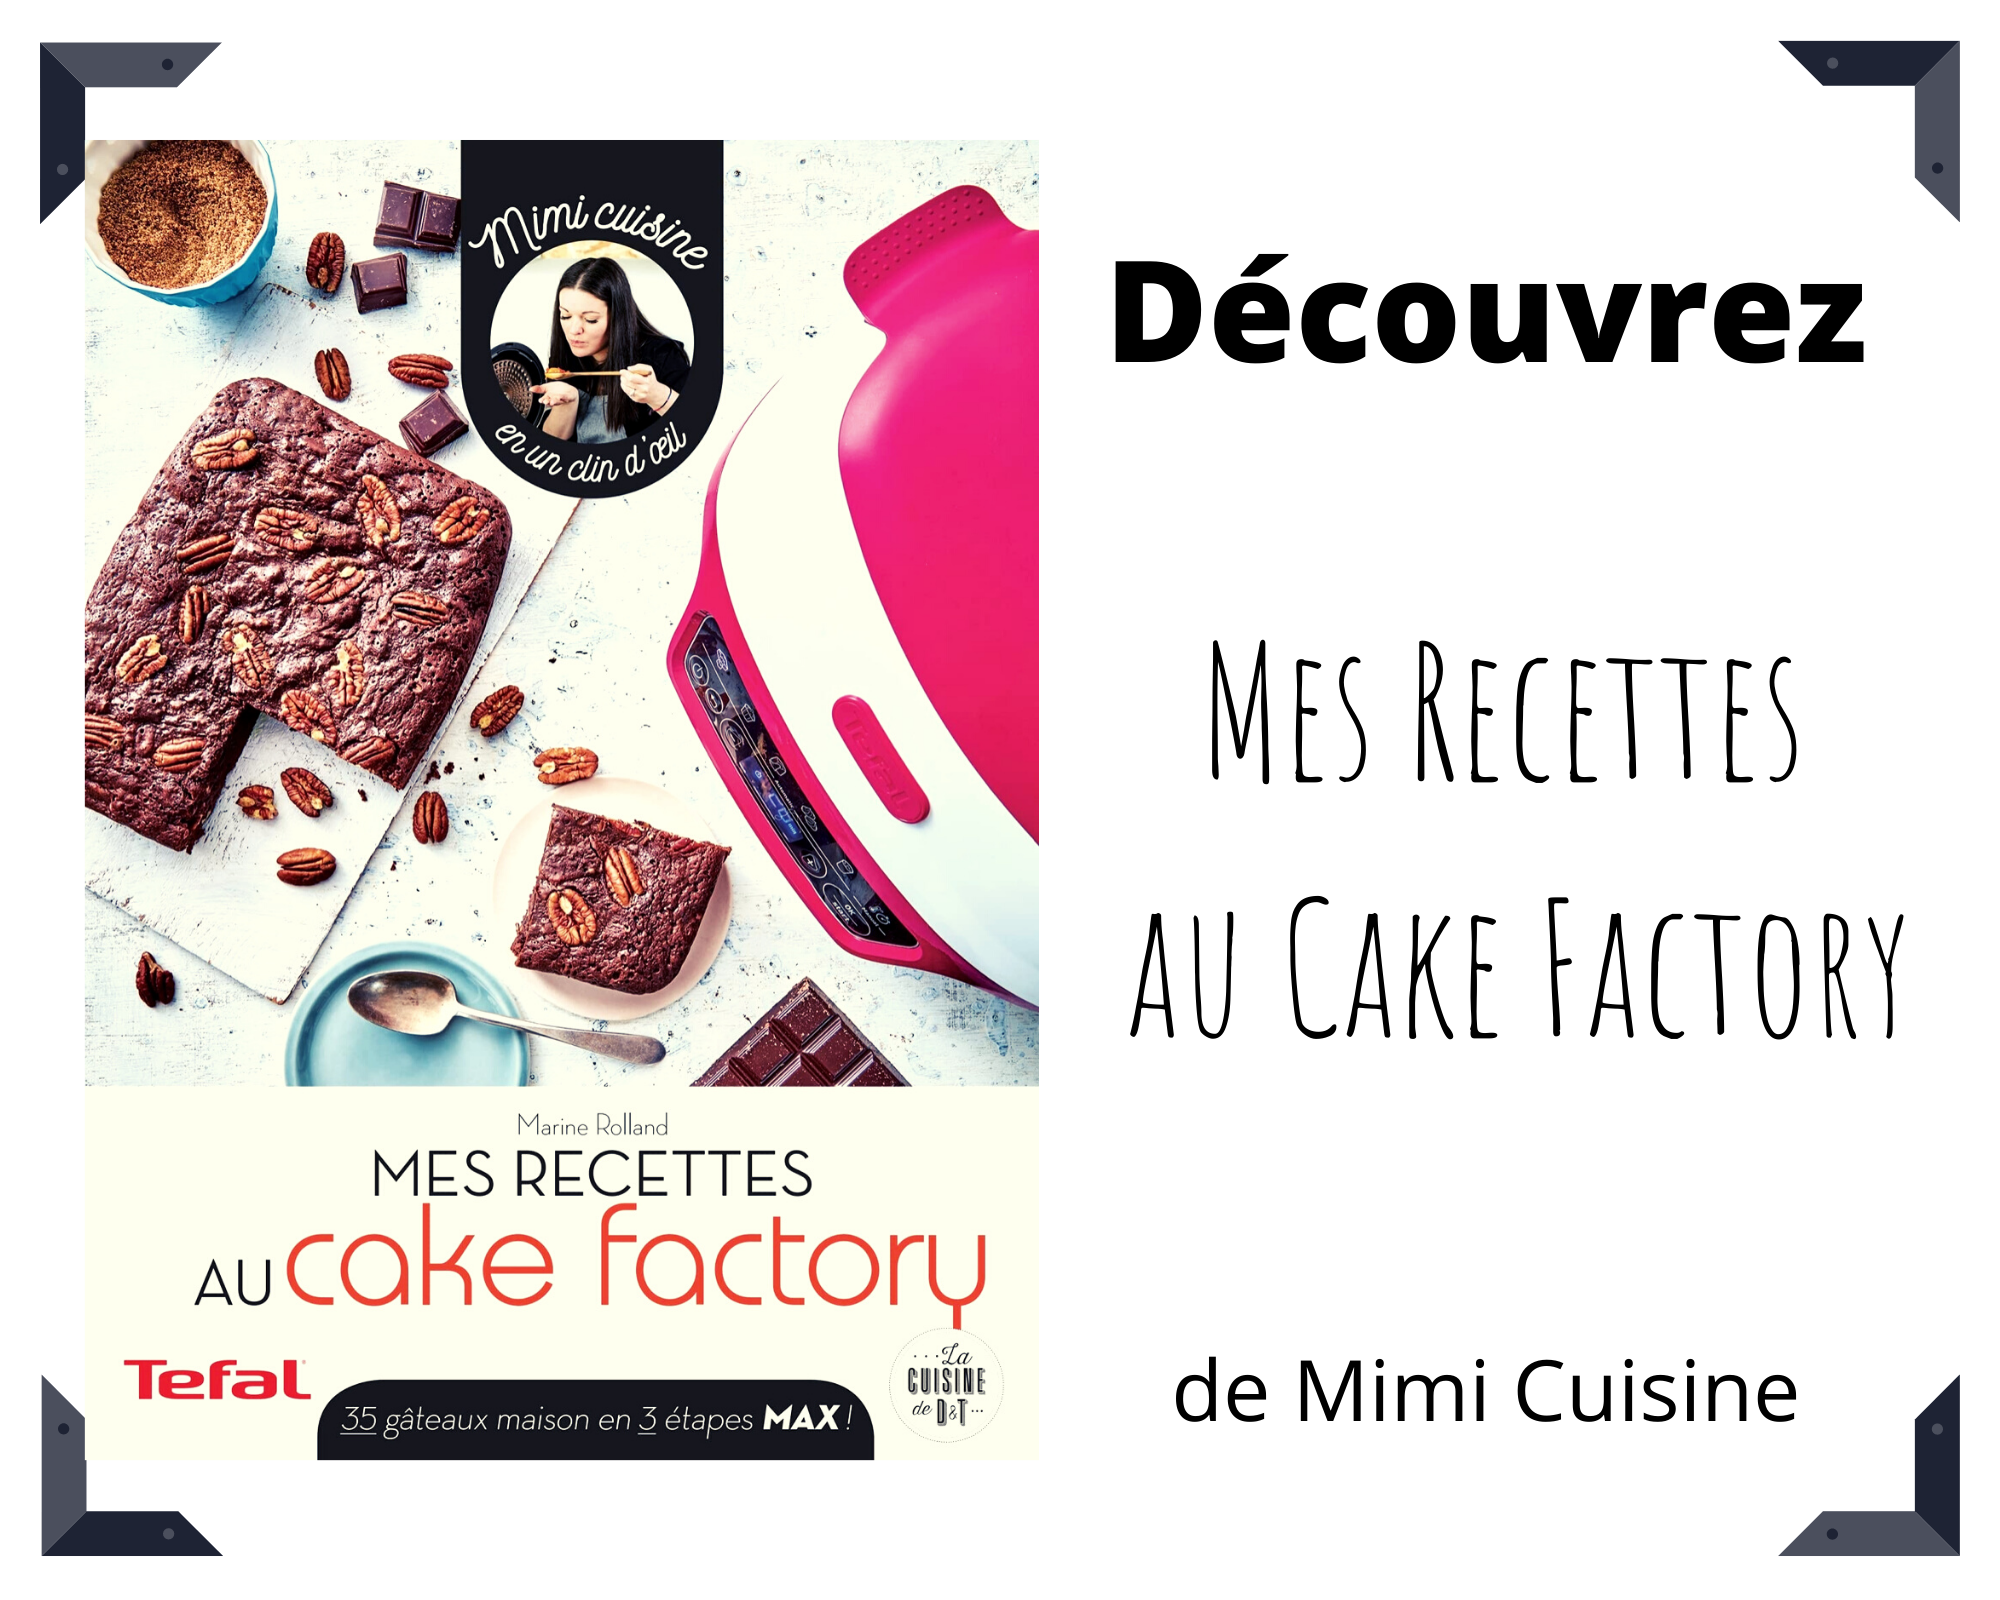 Le nouveau livre Cake Factory : Mes recettes au Cake Factory